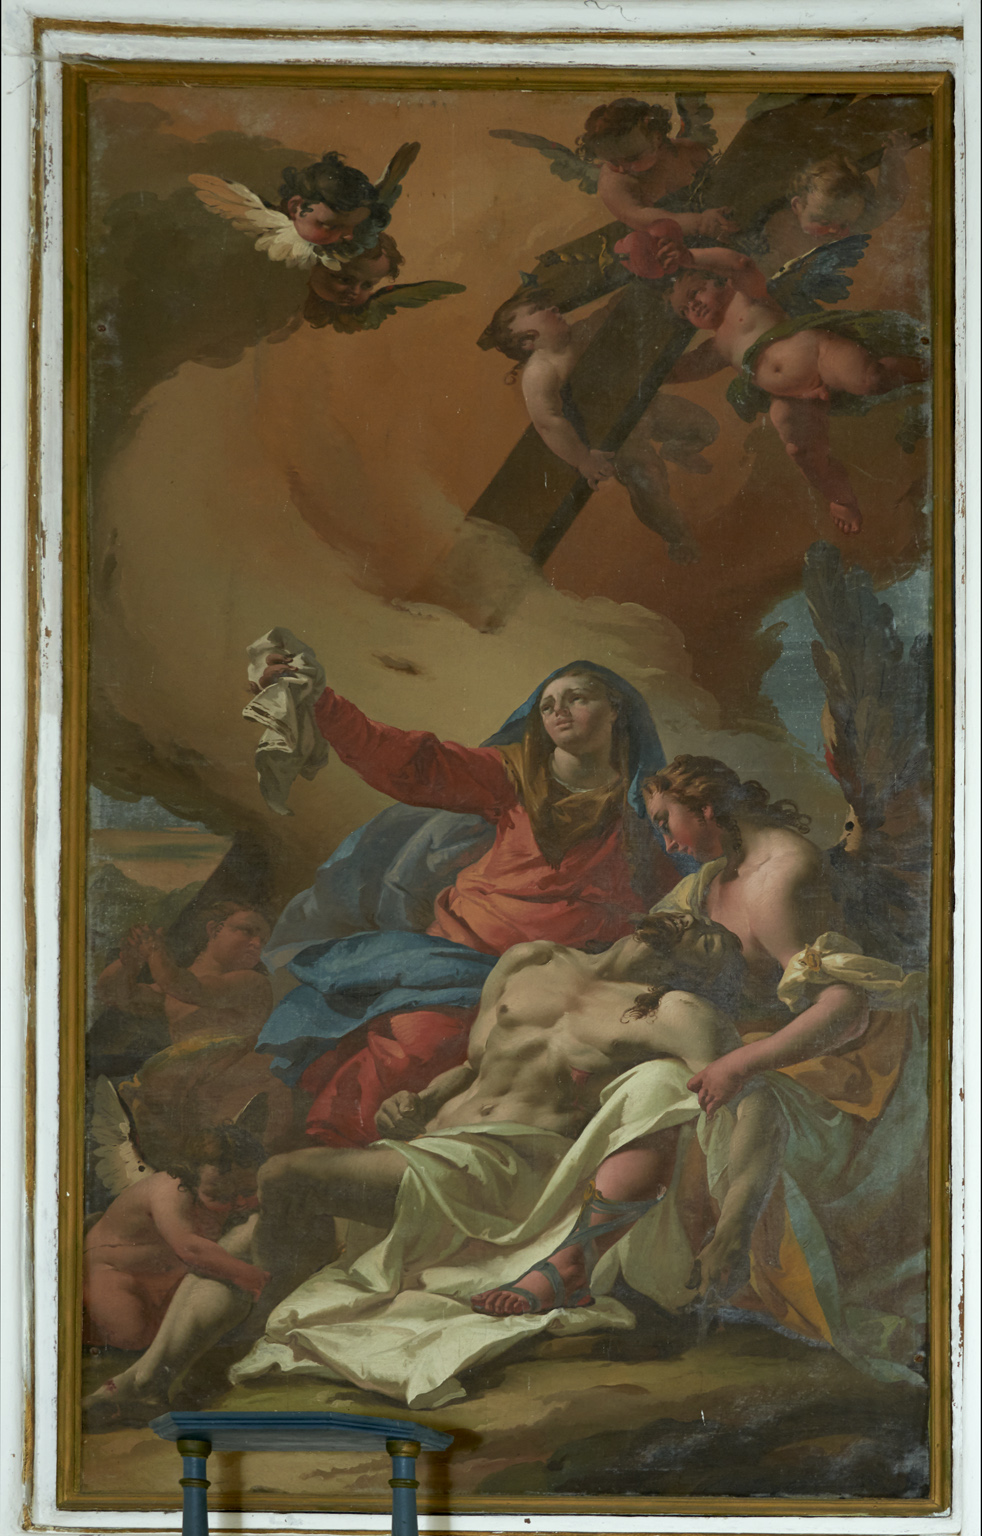 Francesco Lorenzi, Madonna con Cristo deposto sorretto da un angelo. Canete, frazione di Villa di Chiavenna, oratorio della Madonna 